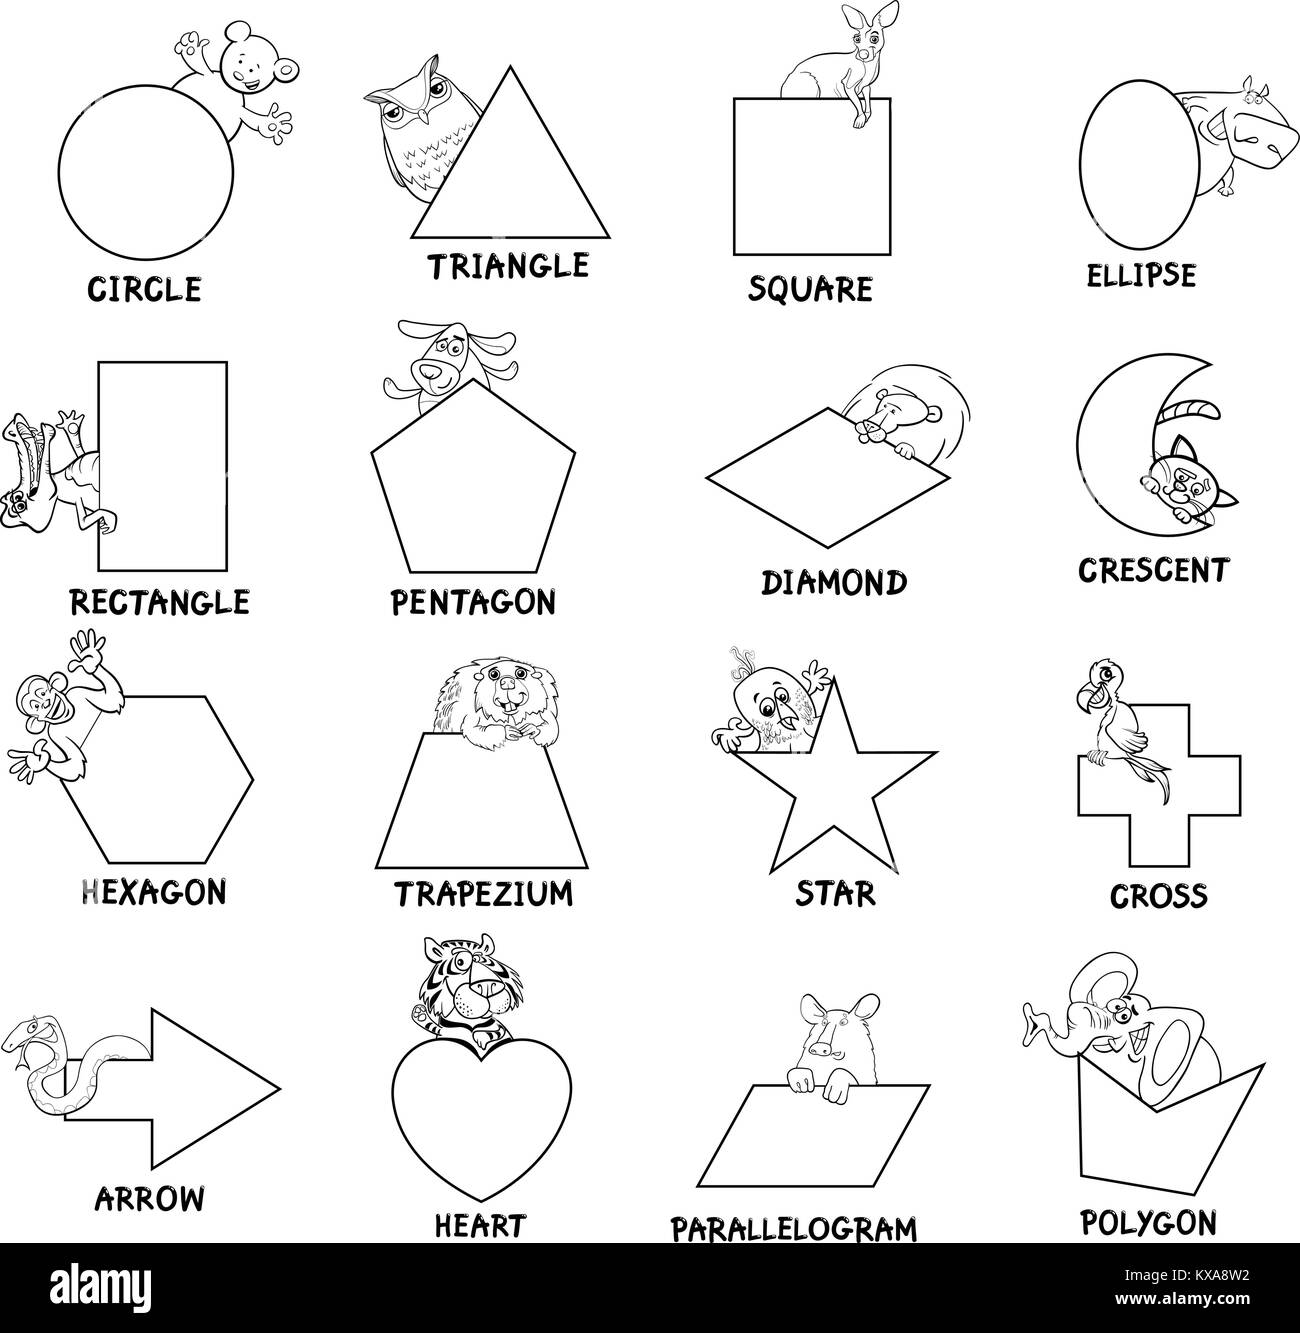 Caricature d'illustration de formes géométriques de base avec des légendes et des personnages d'animaux pour les enfants Illustration de Vecteur